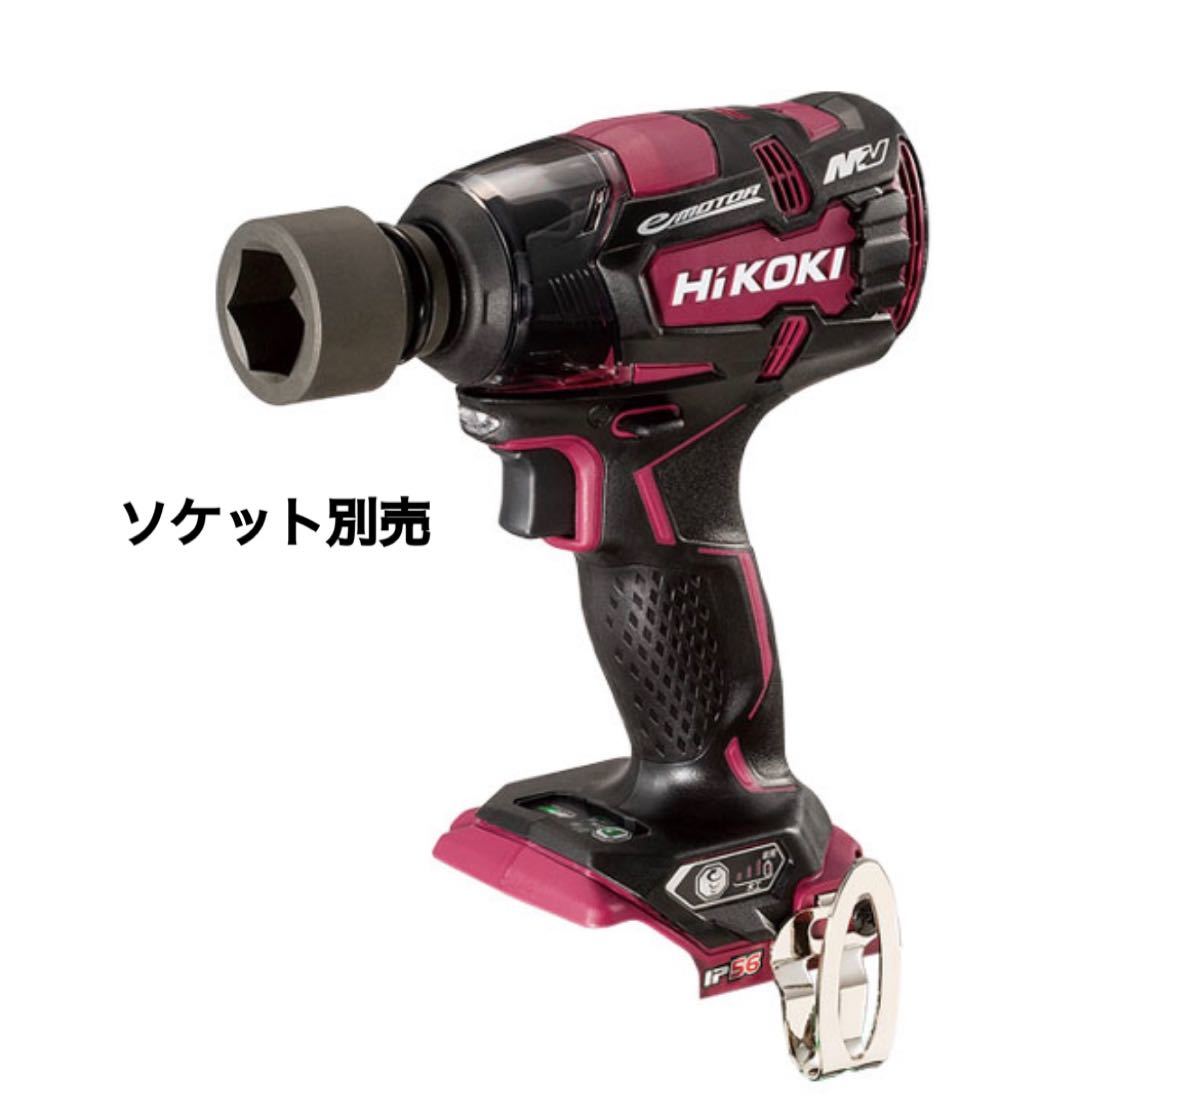 正規輸入品 【HiKOKI】 WR36DC(2XP) 36Vインパクトレンチ 工具/メンテナンス